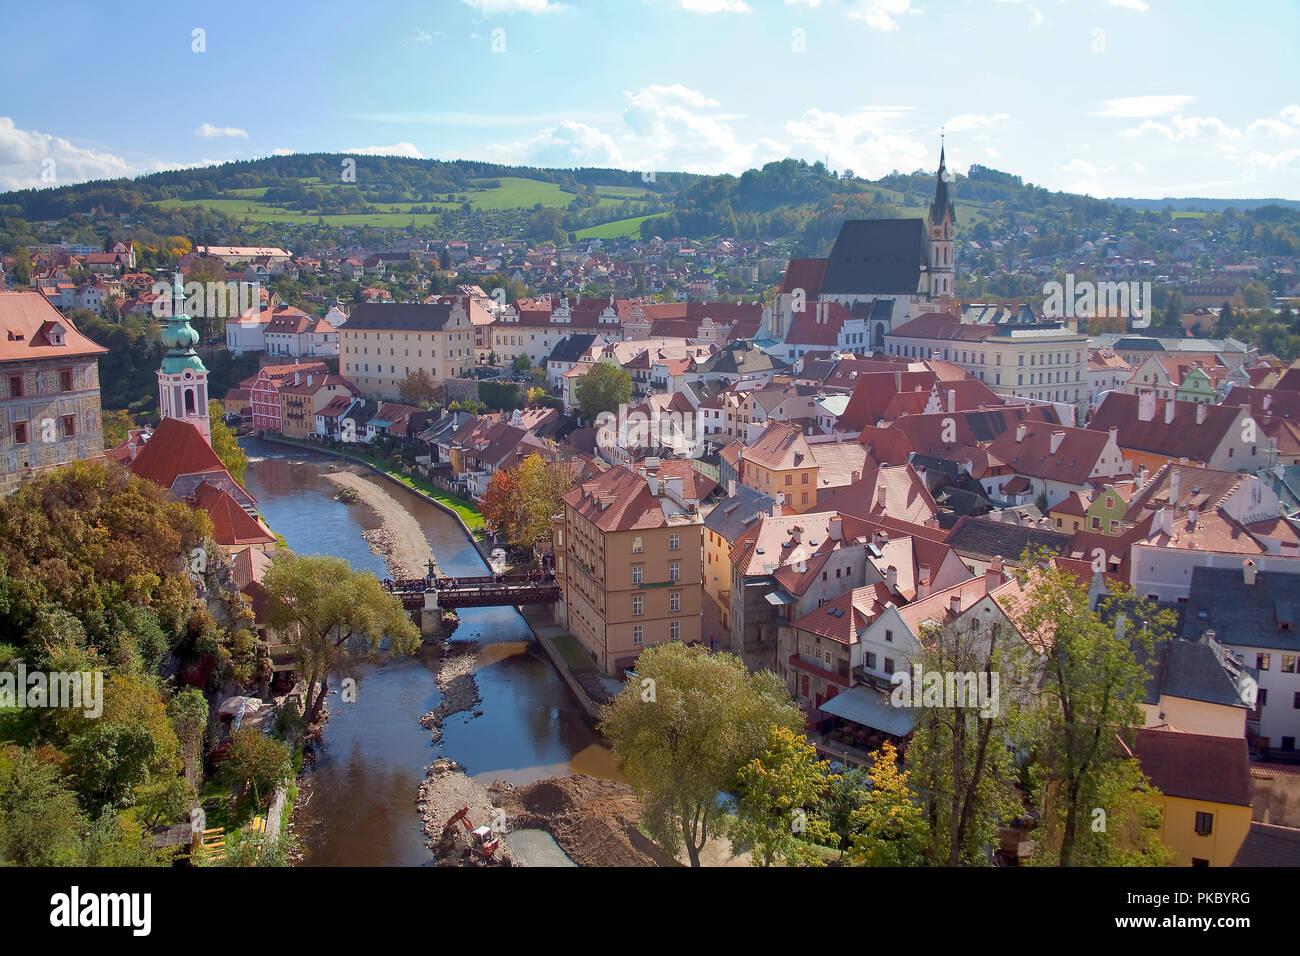 Cityscape of Cesky Krumlov, a world heritage site; Cesky Krumlov, Czech Republic Stock Photo